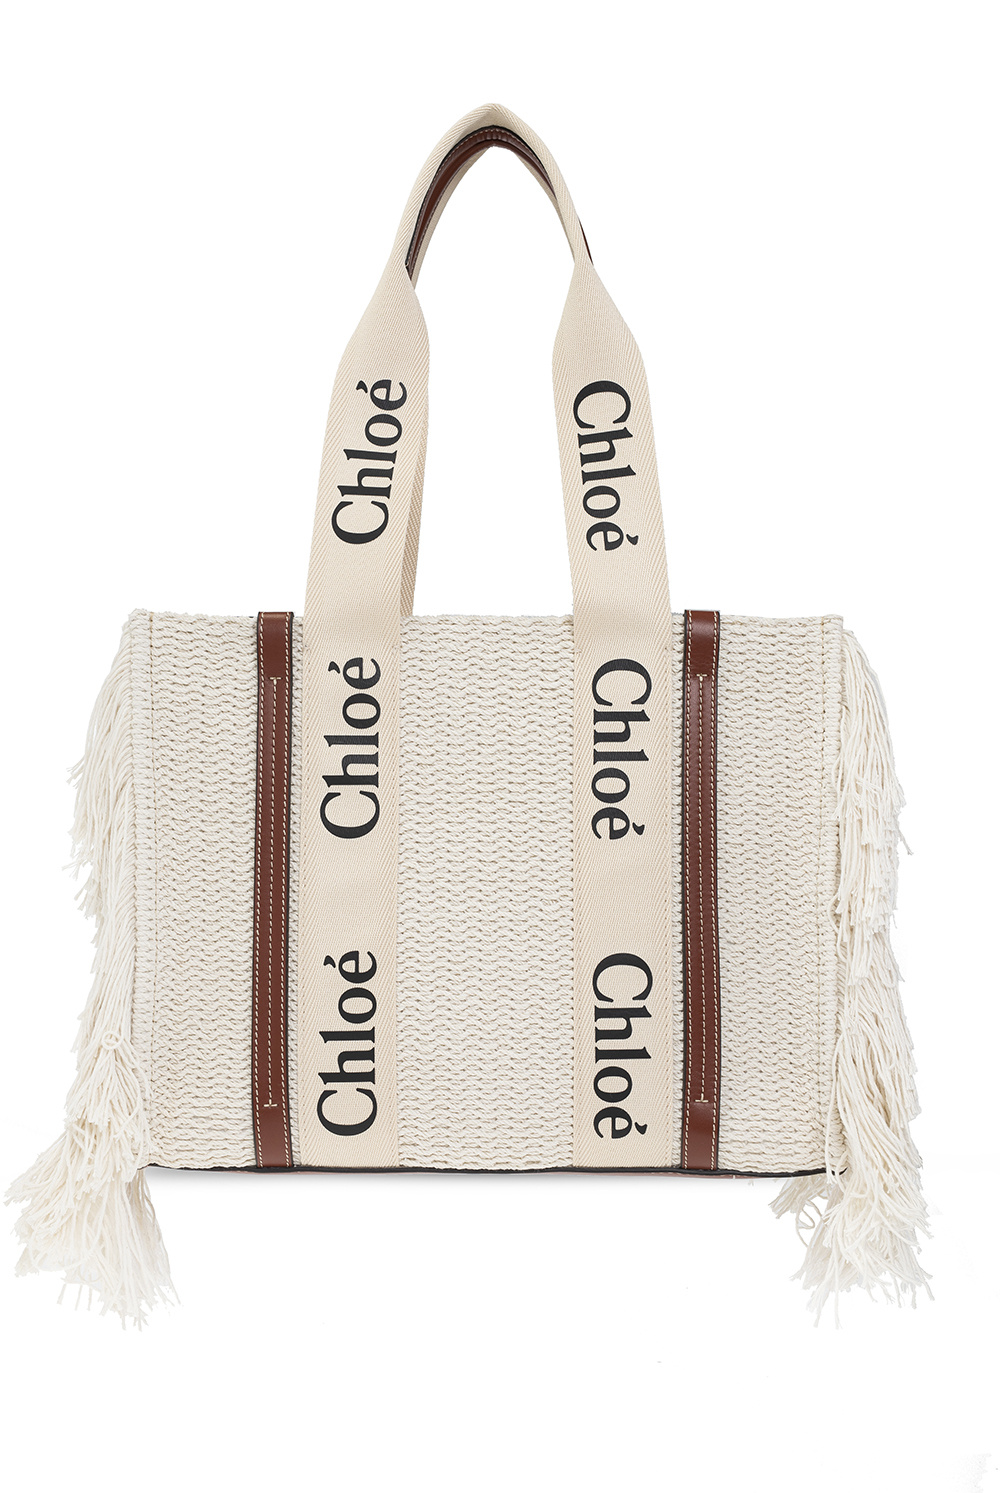 Chloé ‘Woody Medium’ marronper bag